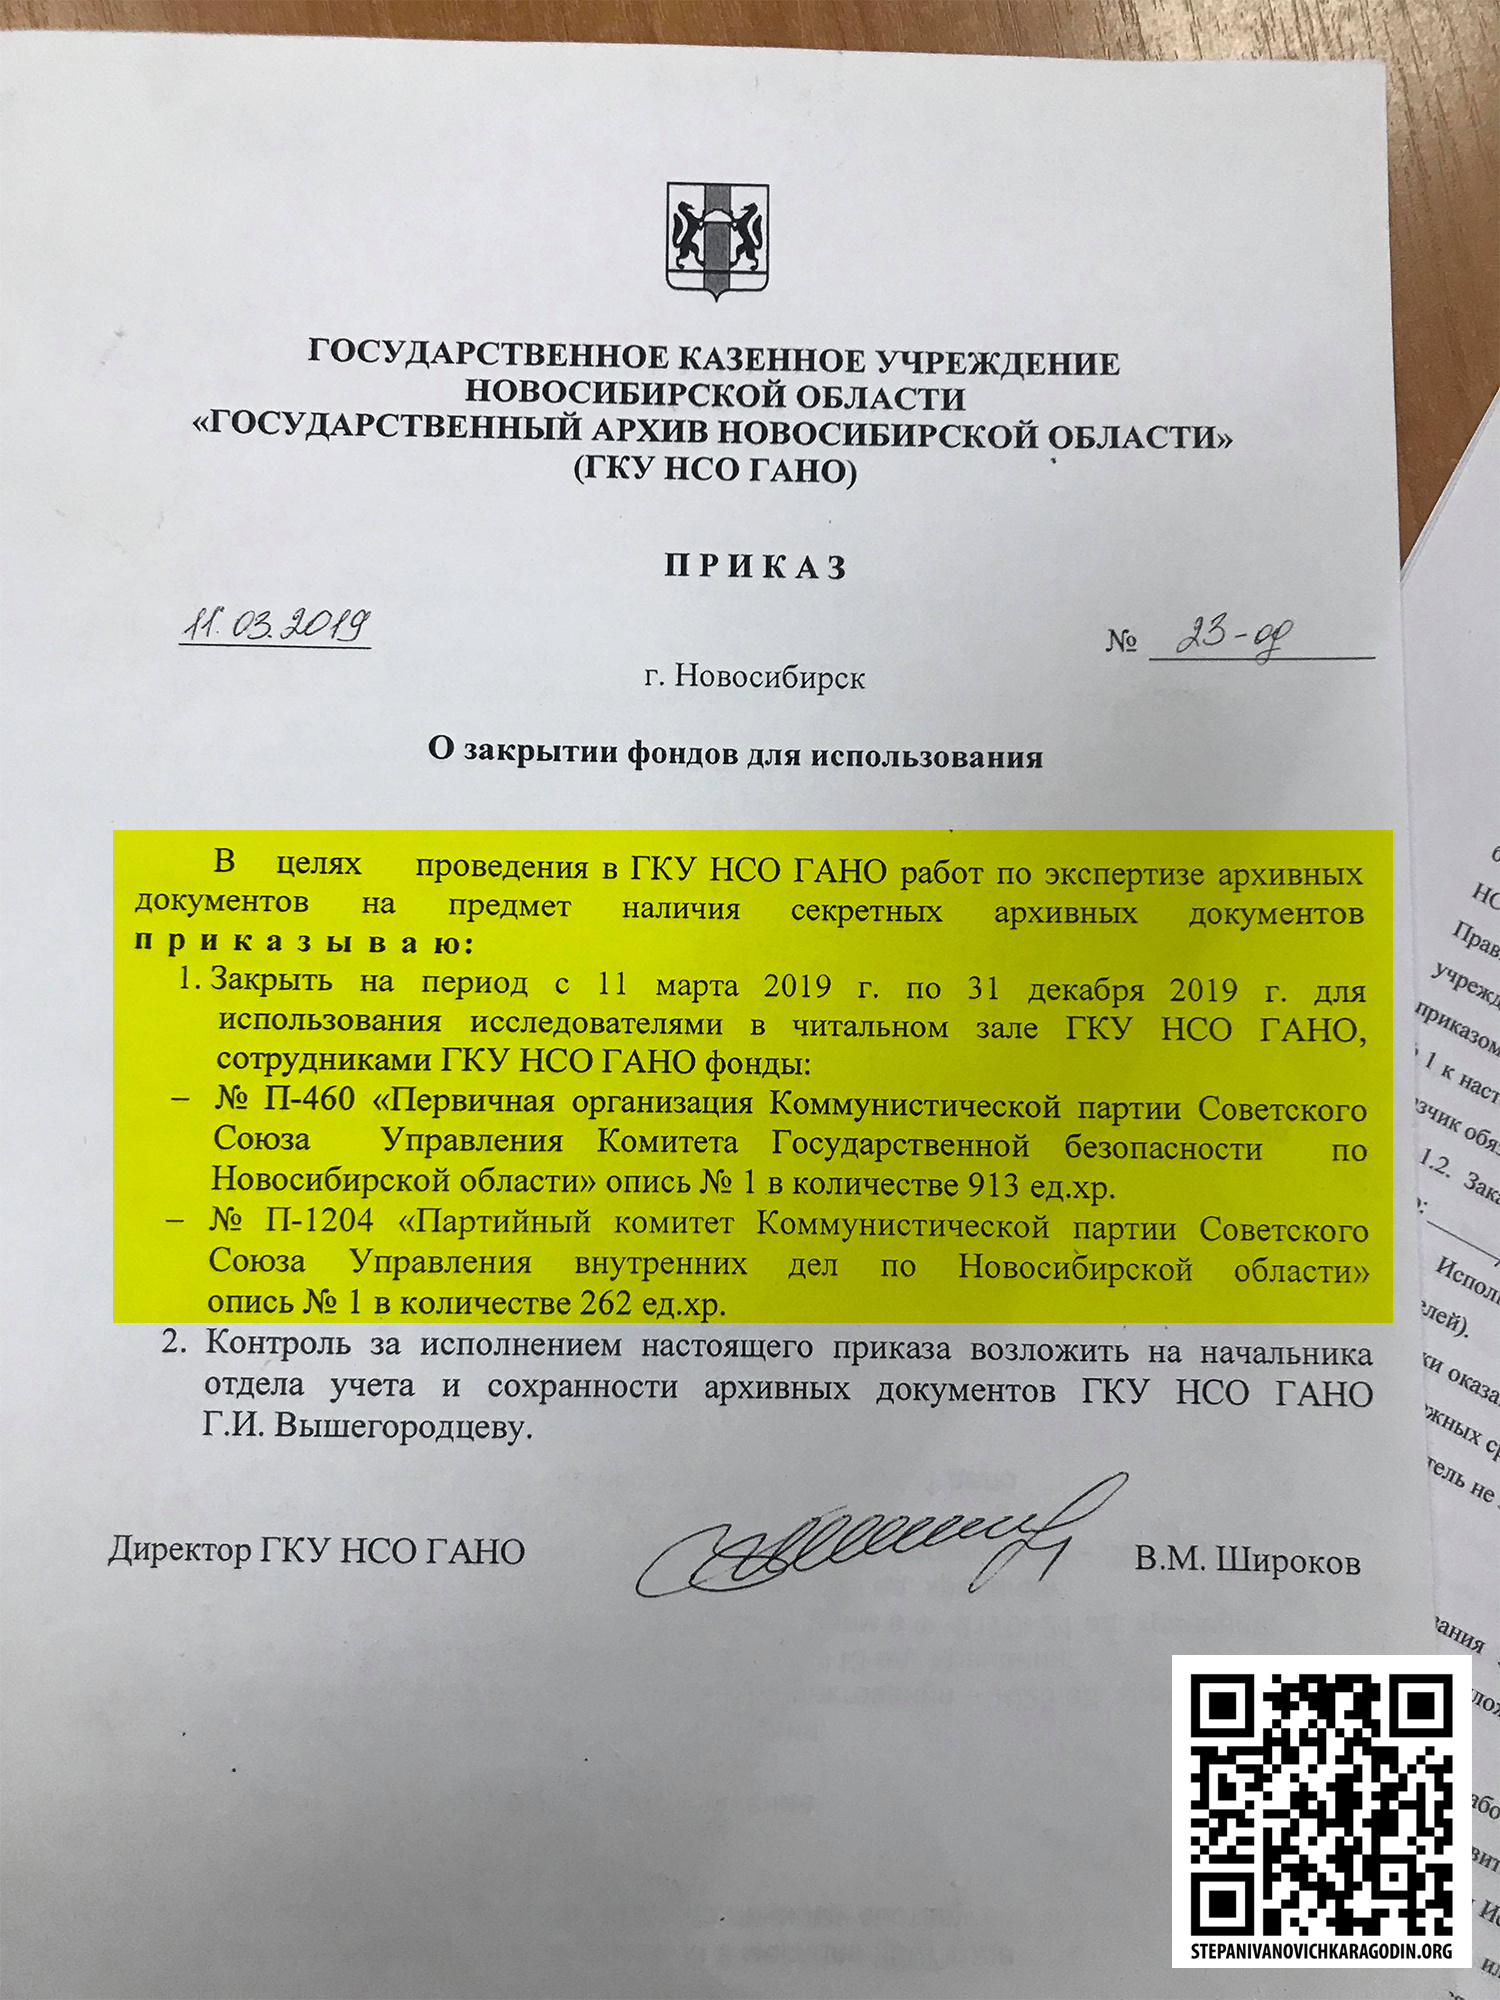 Приказ подписан директором Государственного архива Новосибирской области России Владимиром Широковым